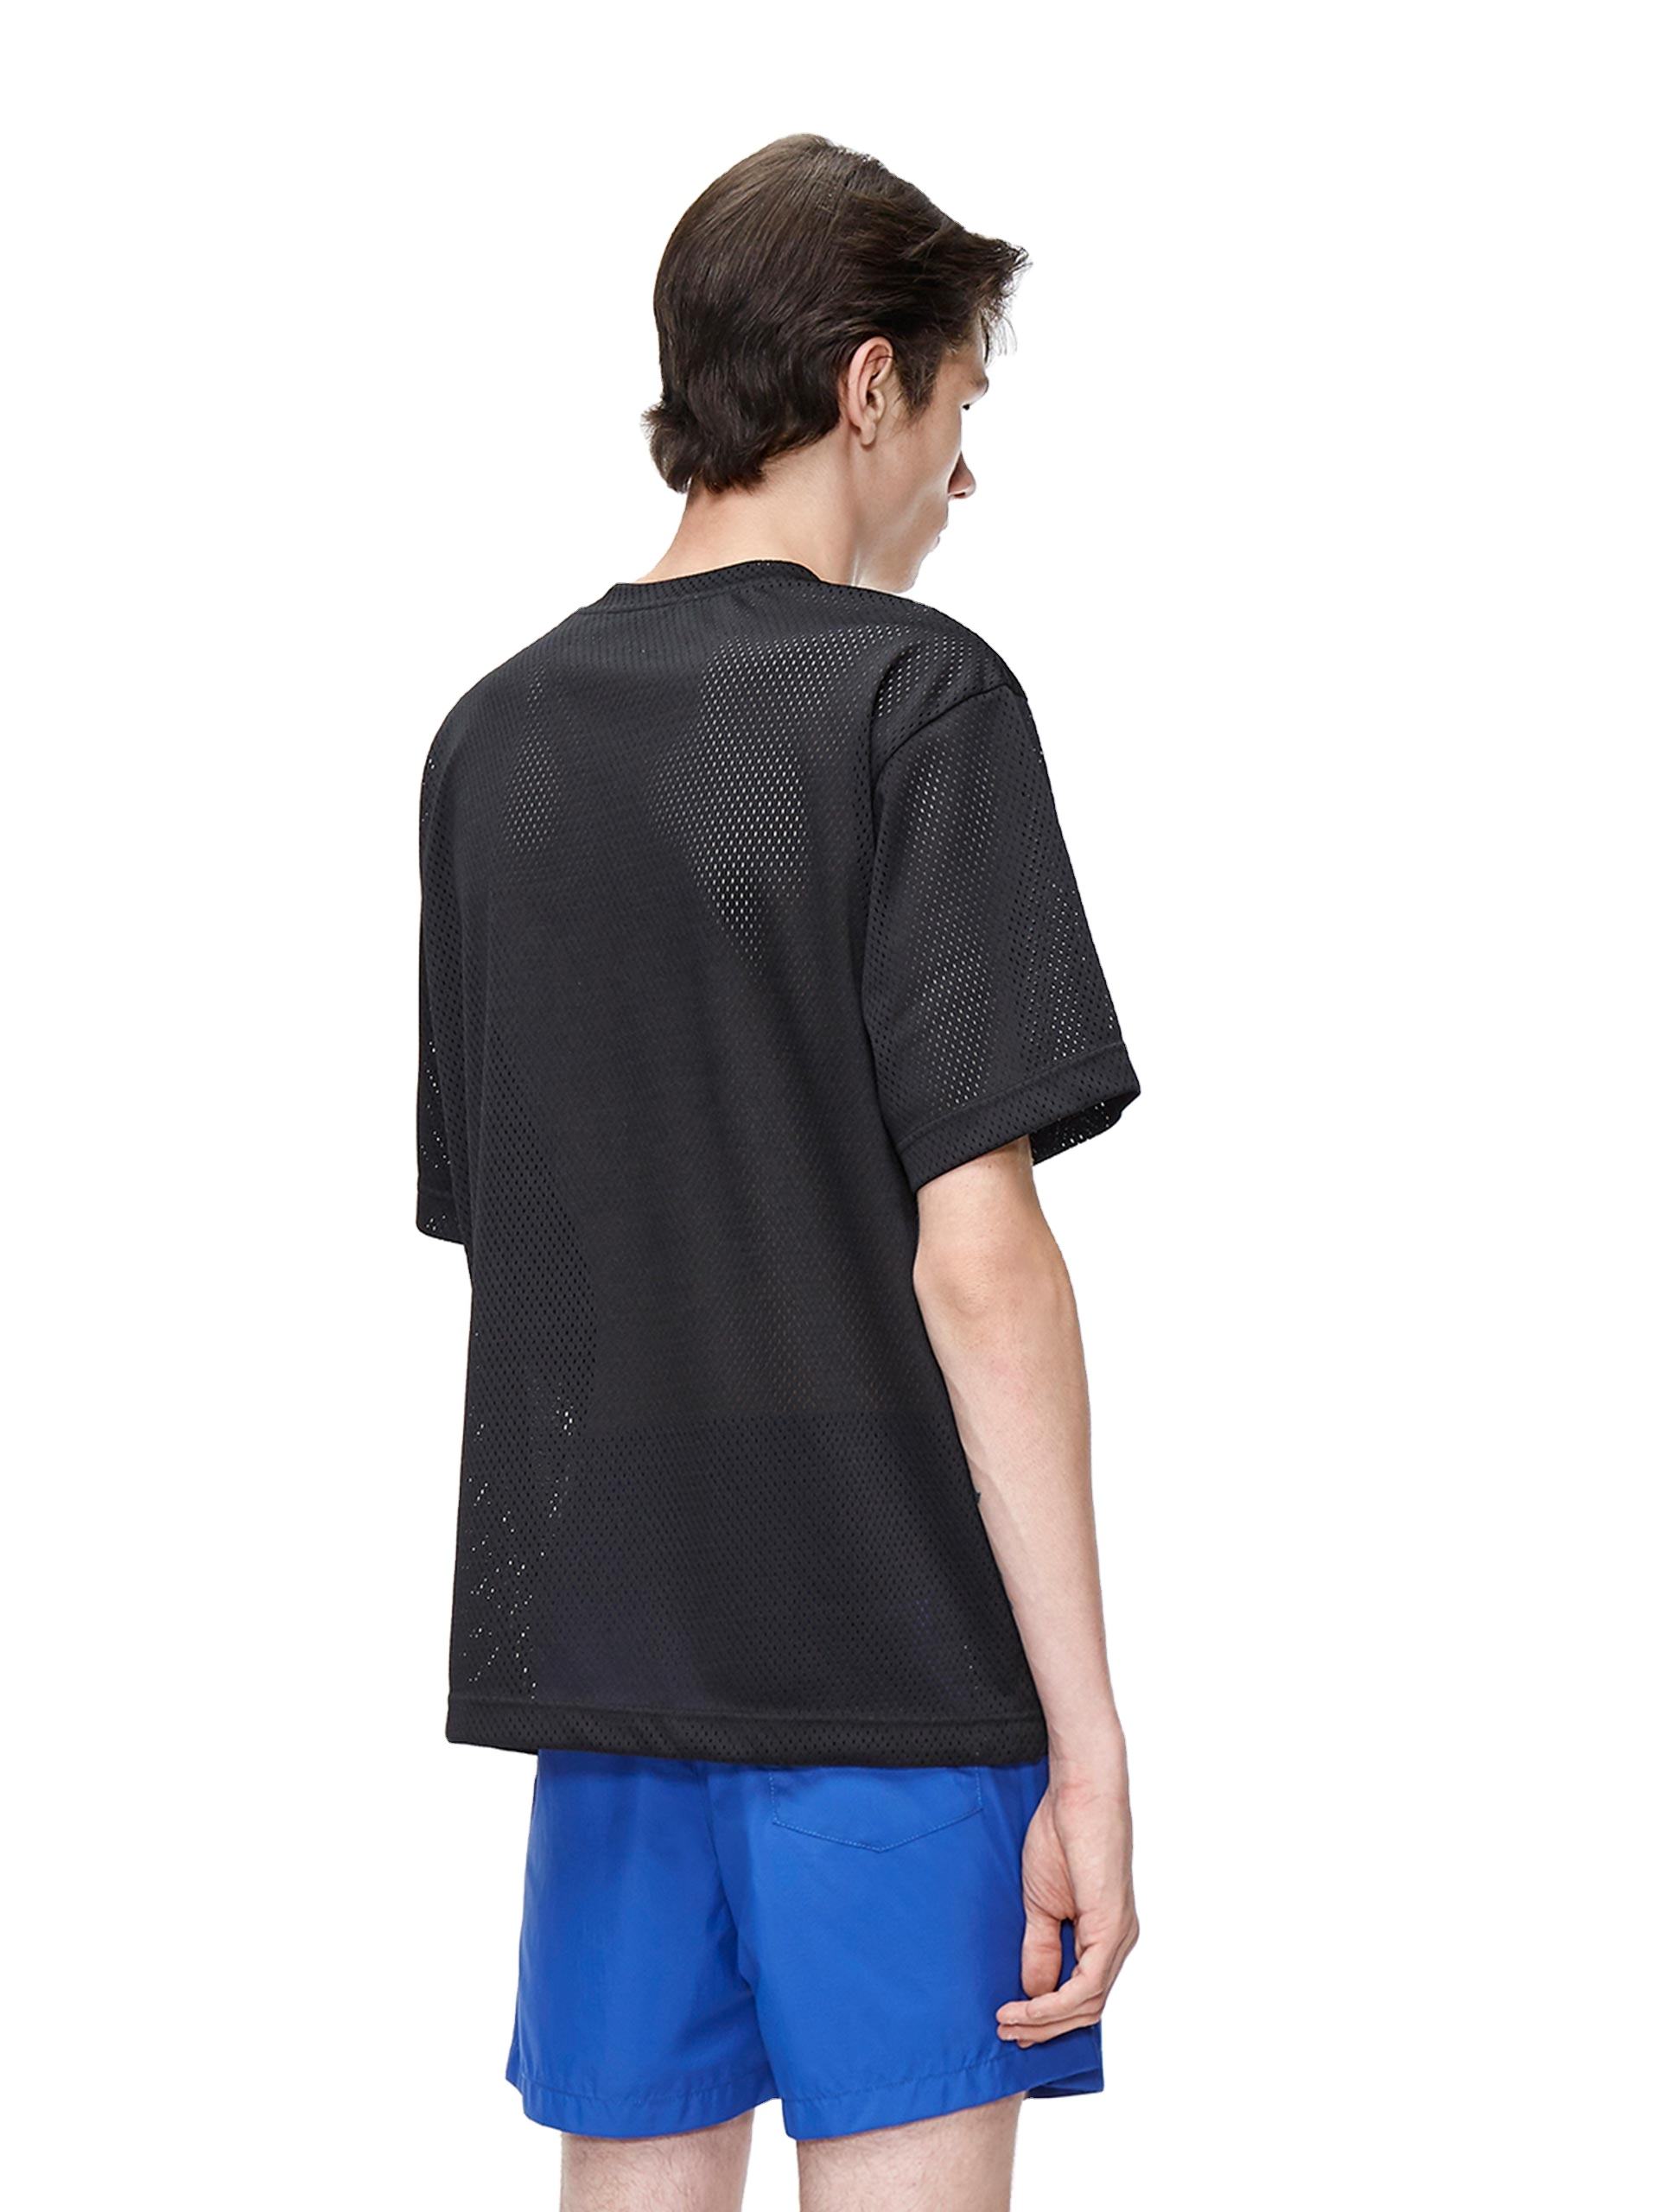 Maglietta da uomo in rete traspirante nera all'ingrosso con tasche